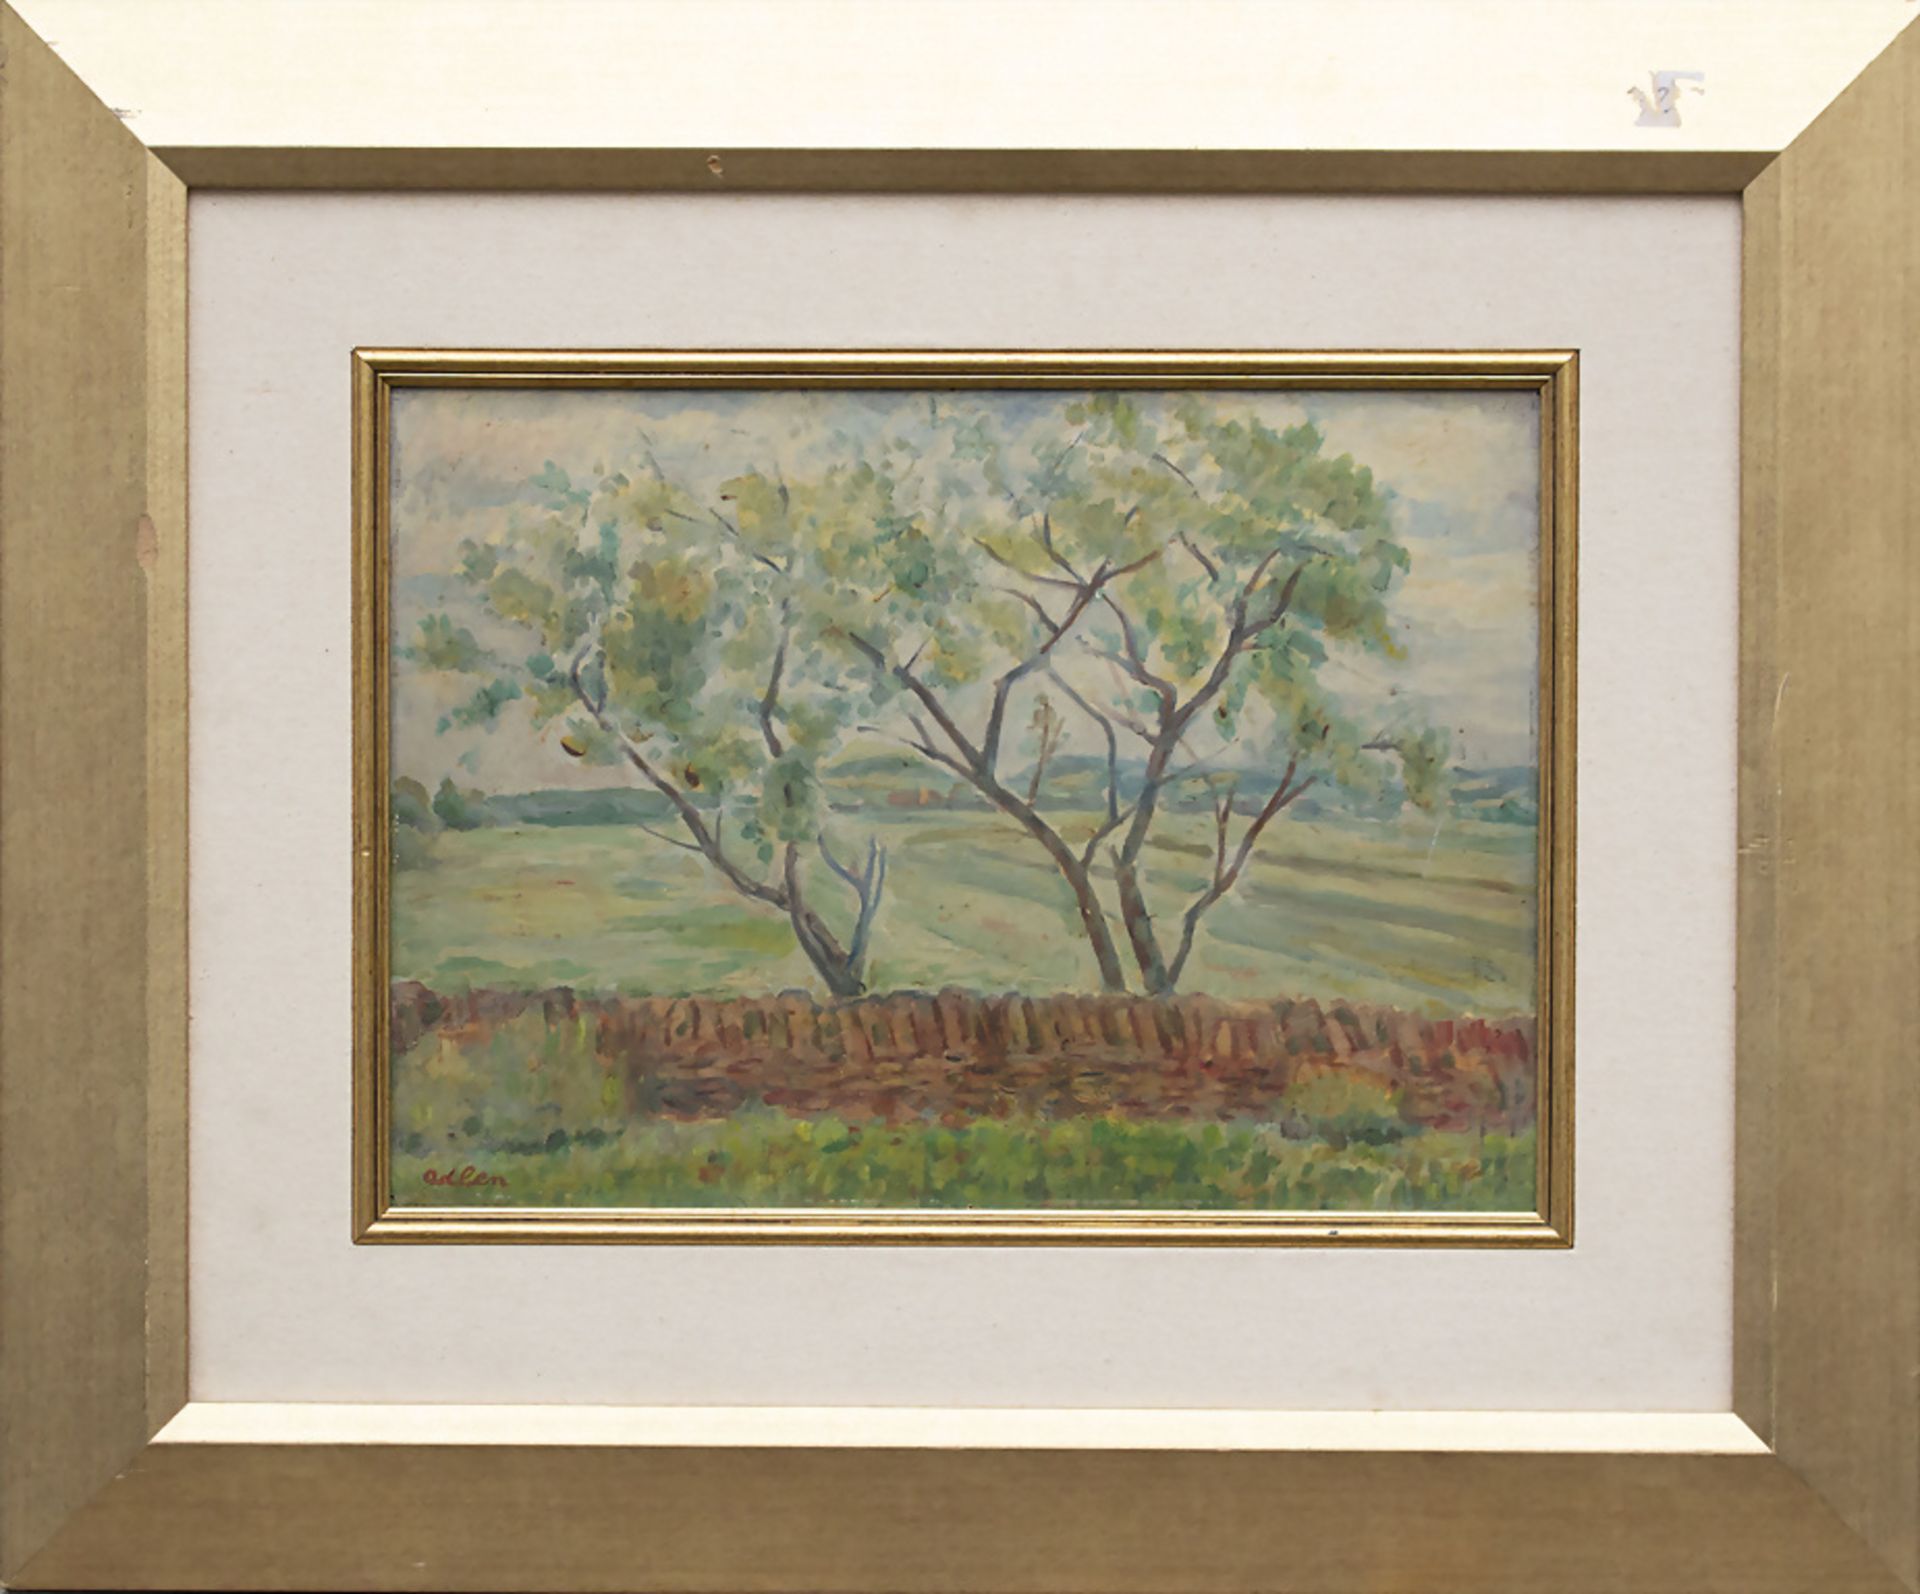 Michel ADLEN (1898-1980), 'Landschaft mit Bäumen' / 'landscape with trees', 1945 - Bild 2 aus 5